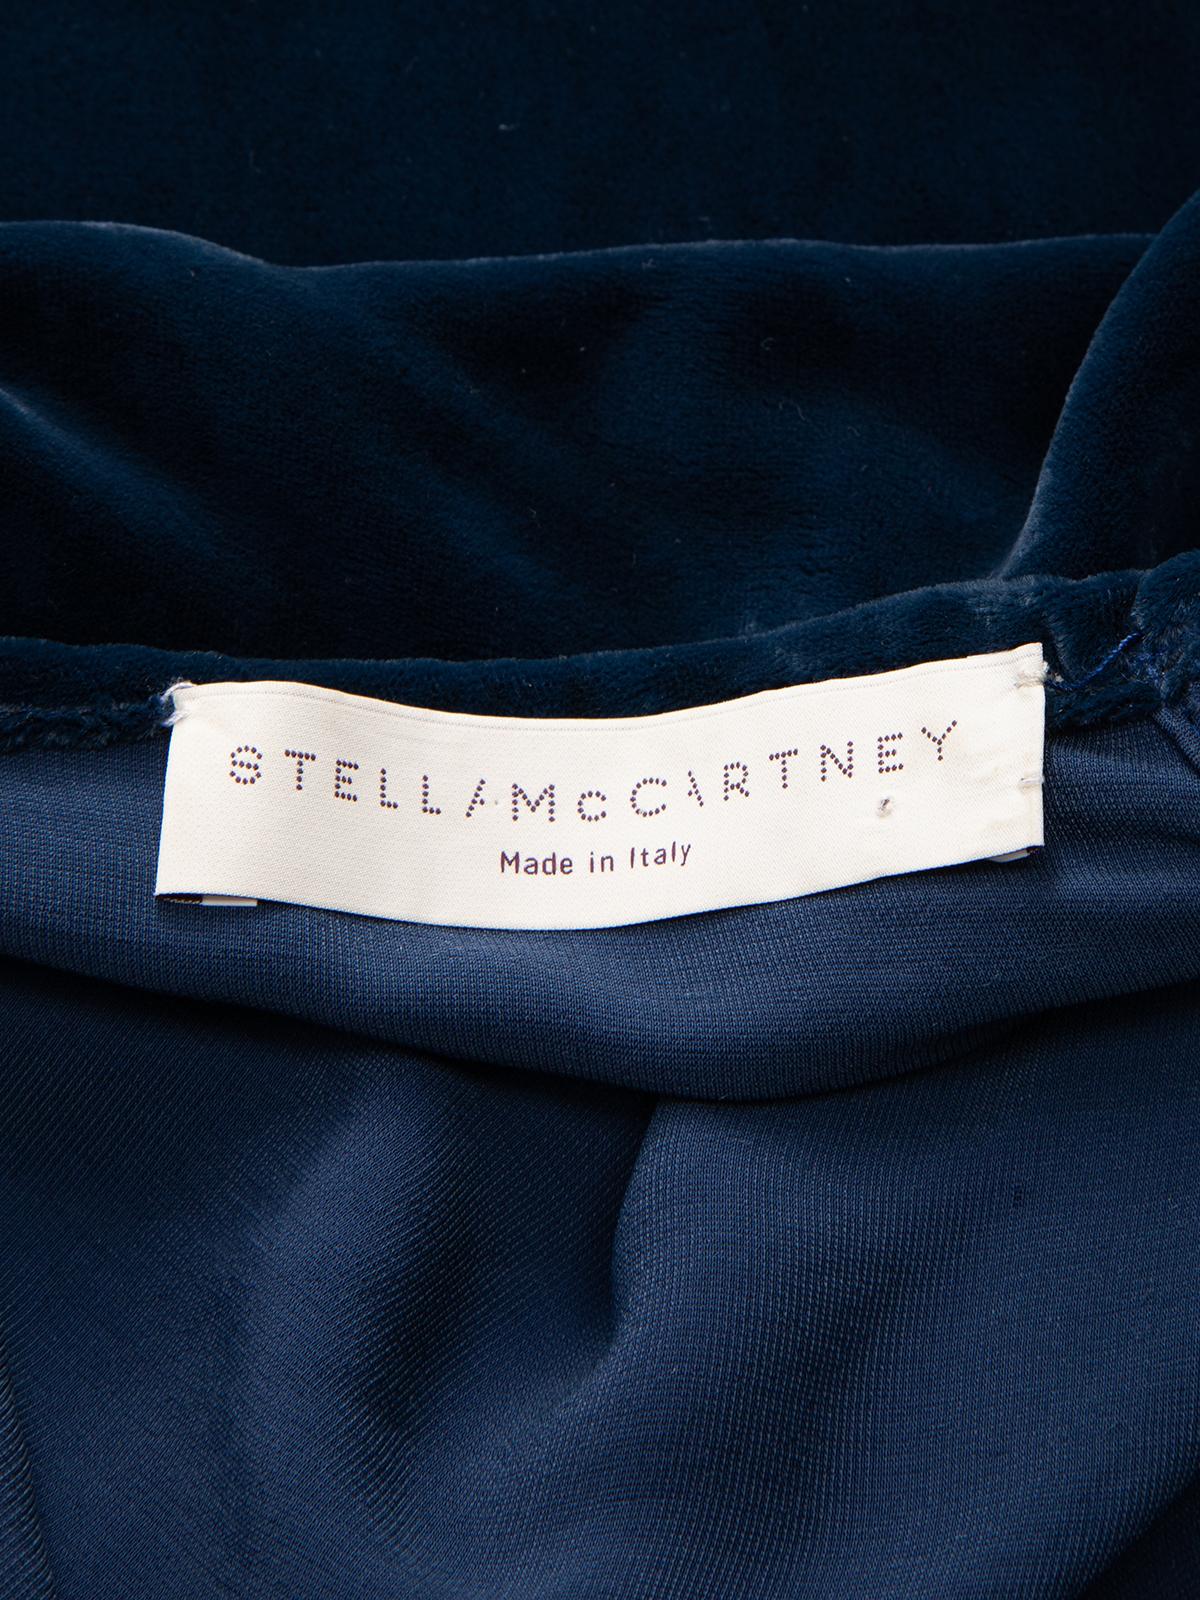 Stella McCartney Women's Velvet Open Back Cape Dress For Sale 3